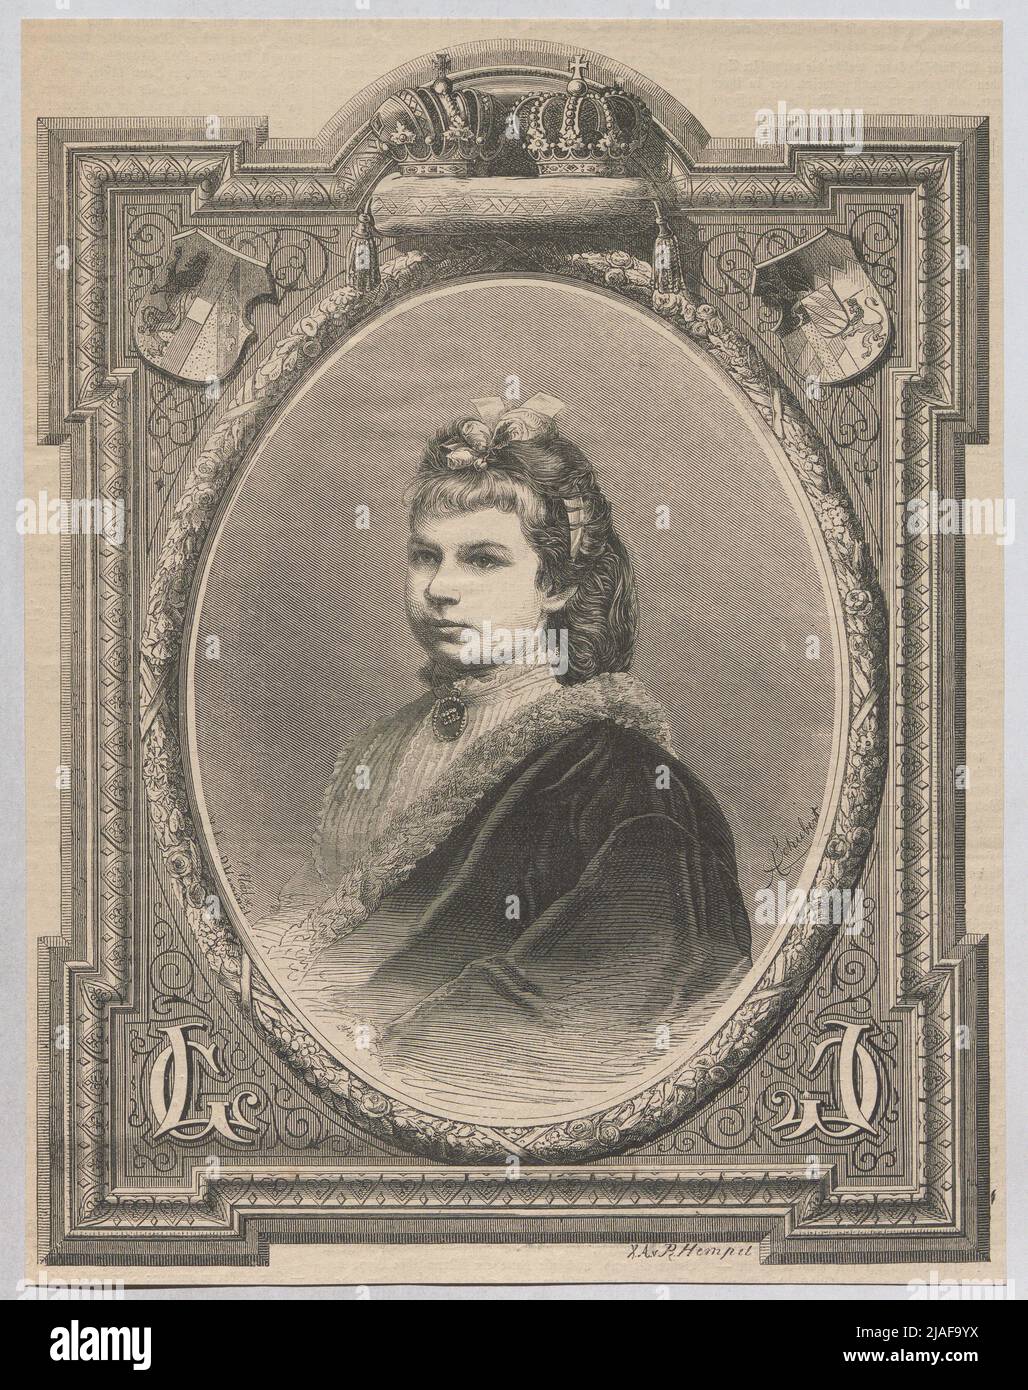 Archduchess Gisela of Austria. After: August Schubert (1844-1903), artist Stock Photo